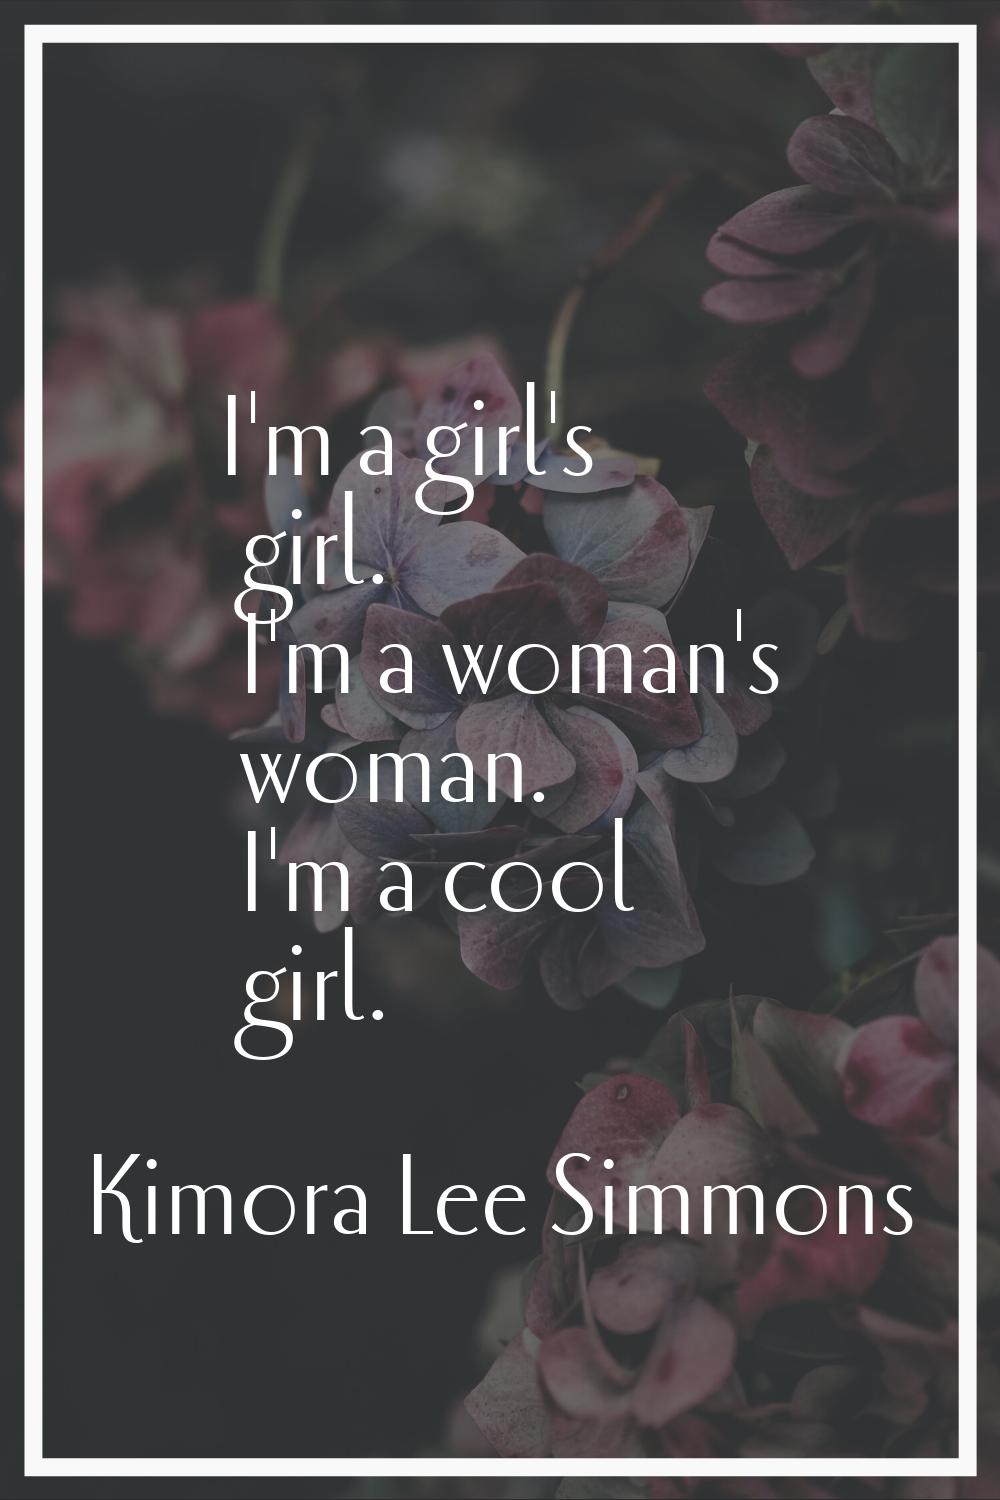 I'm a girl's girl. I'm a woman's woman. I'm a cool girl.